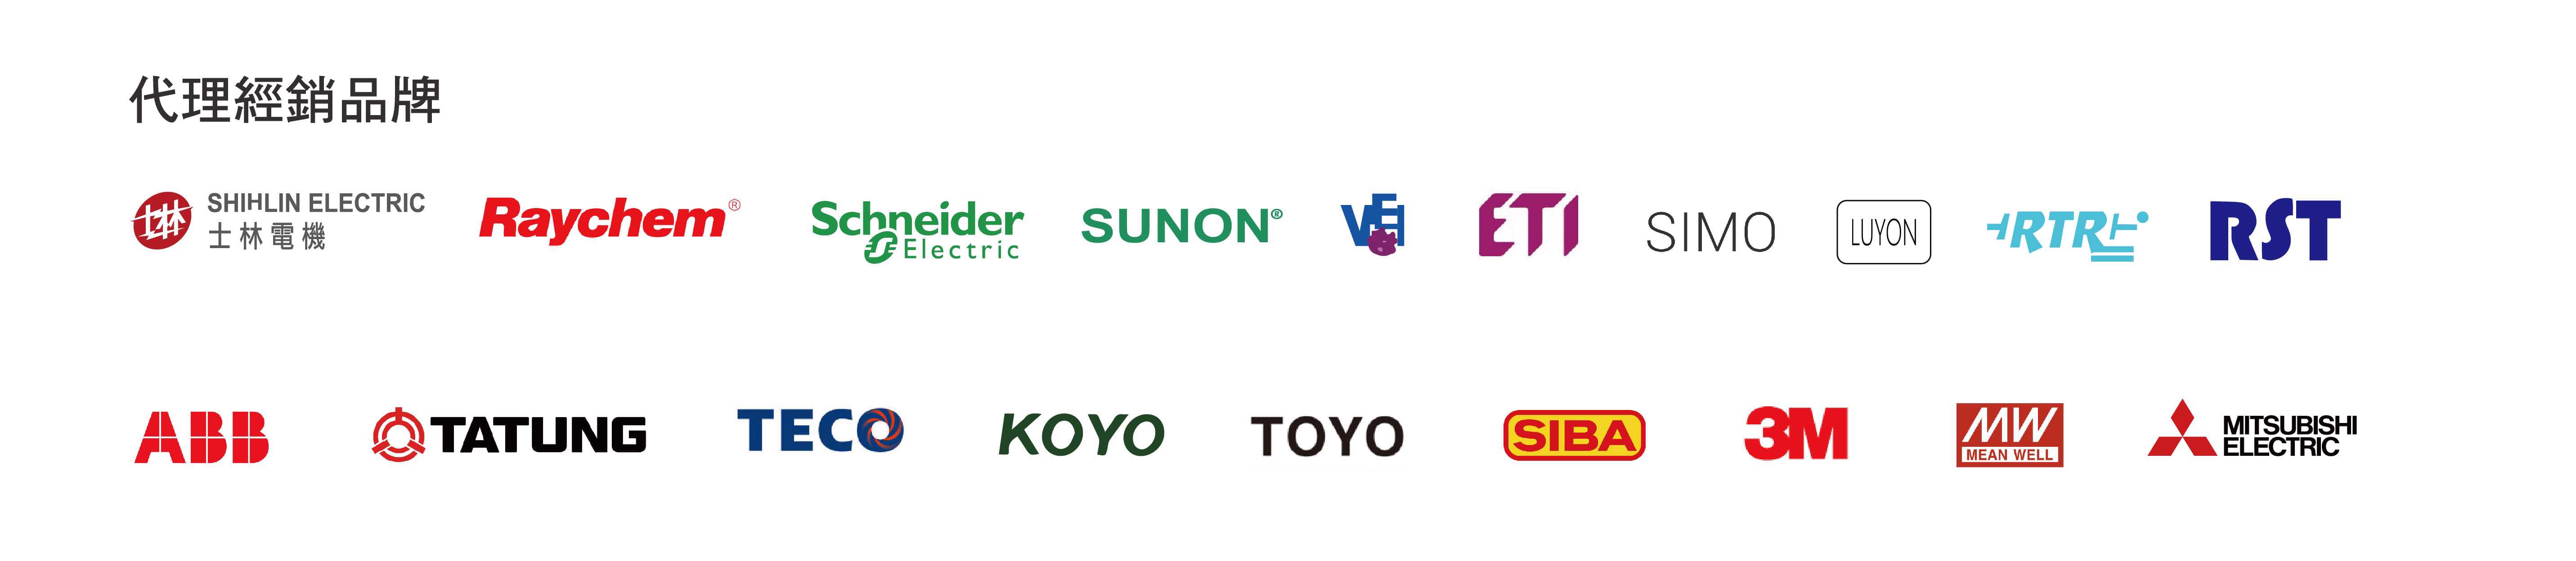 汎武代理與經銷的品牌logo